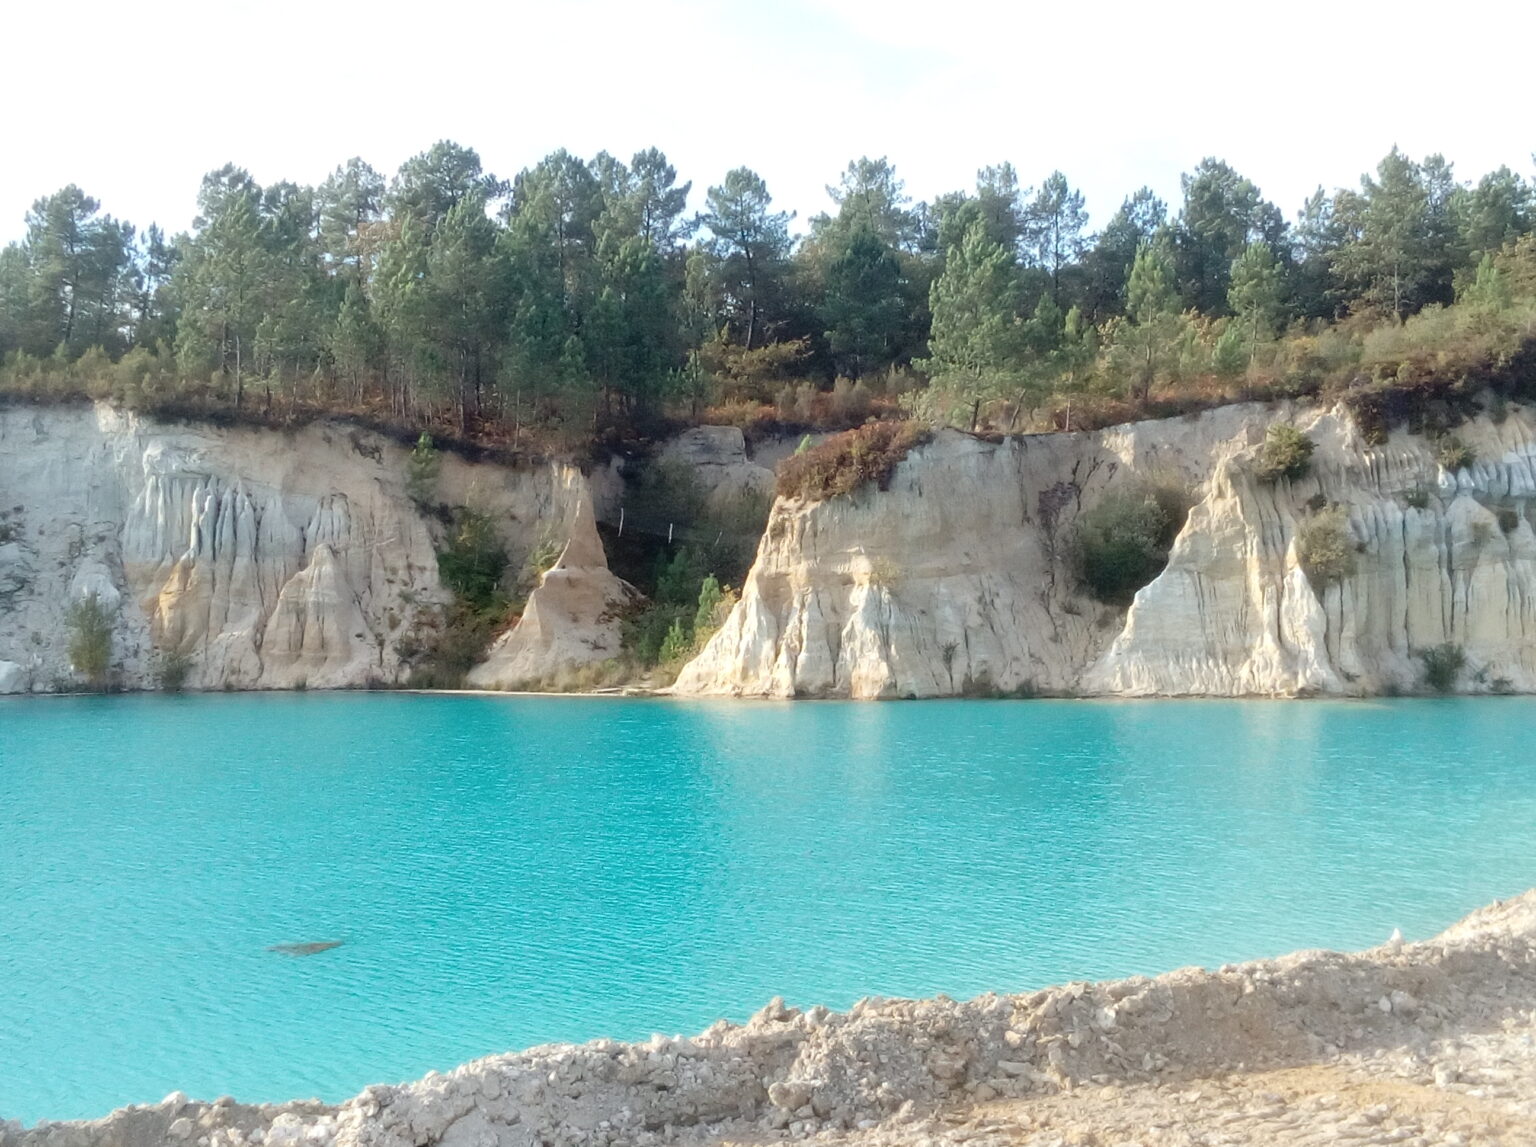 Vue du Lac de Guizengeard avec son eau bleu et les falaises tout autour